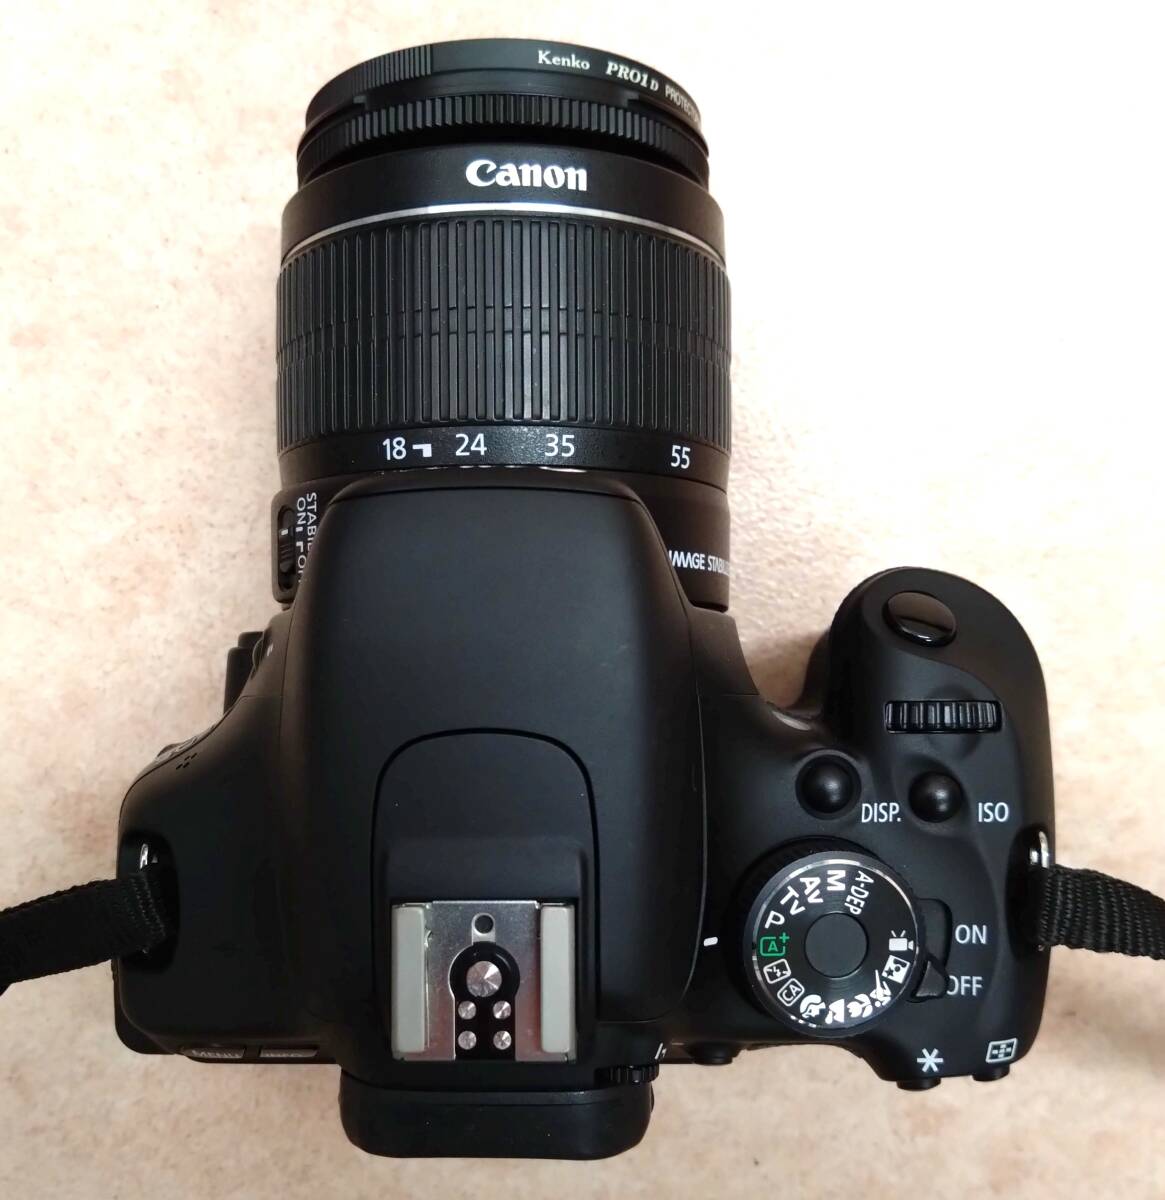 ◇ 美品 キヤノン Canon EOS Kiss X5 デジタル一眼レフカメラ EF-S 18-55mm 1:3.5-5.6 IS II 充電器 取説書 収納バッグ付き ◇の画像4